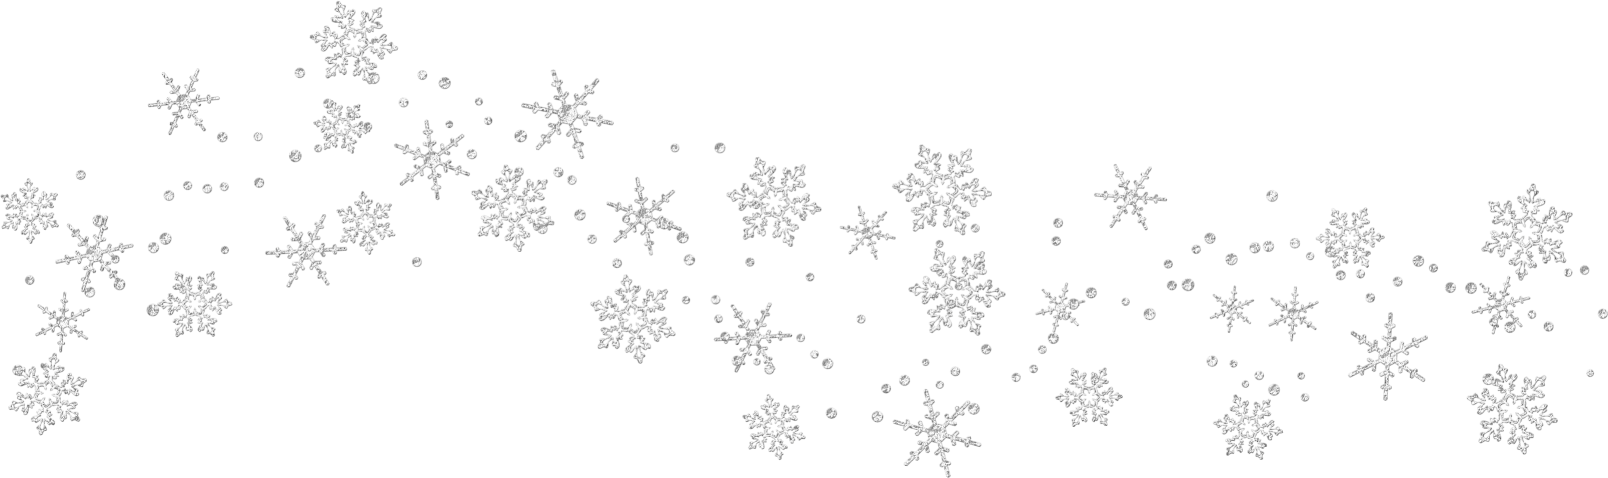 Transparent snowflakes clipart 0